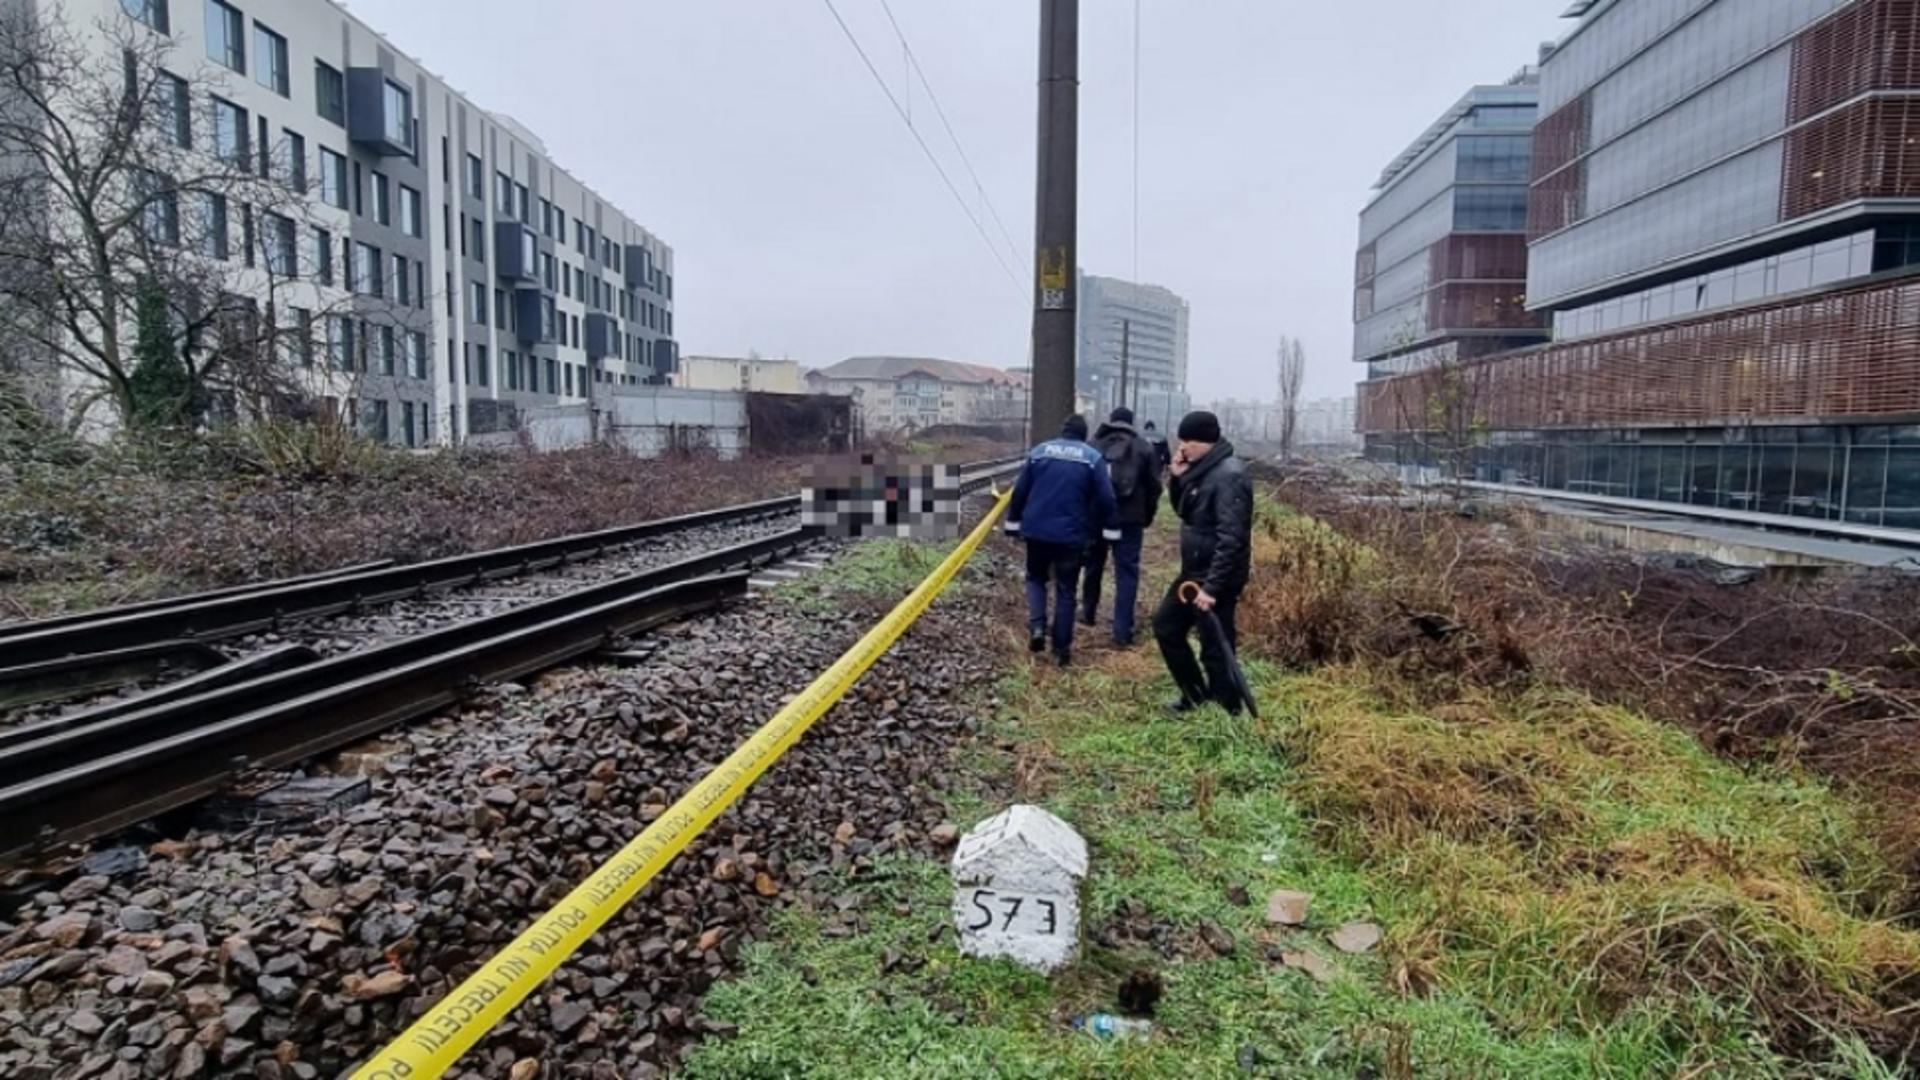 Bărbat găsit mort pe calea ferată. A fost spulberat de locomotivă